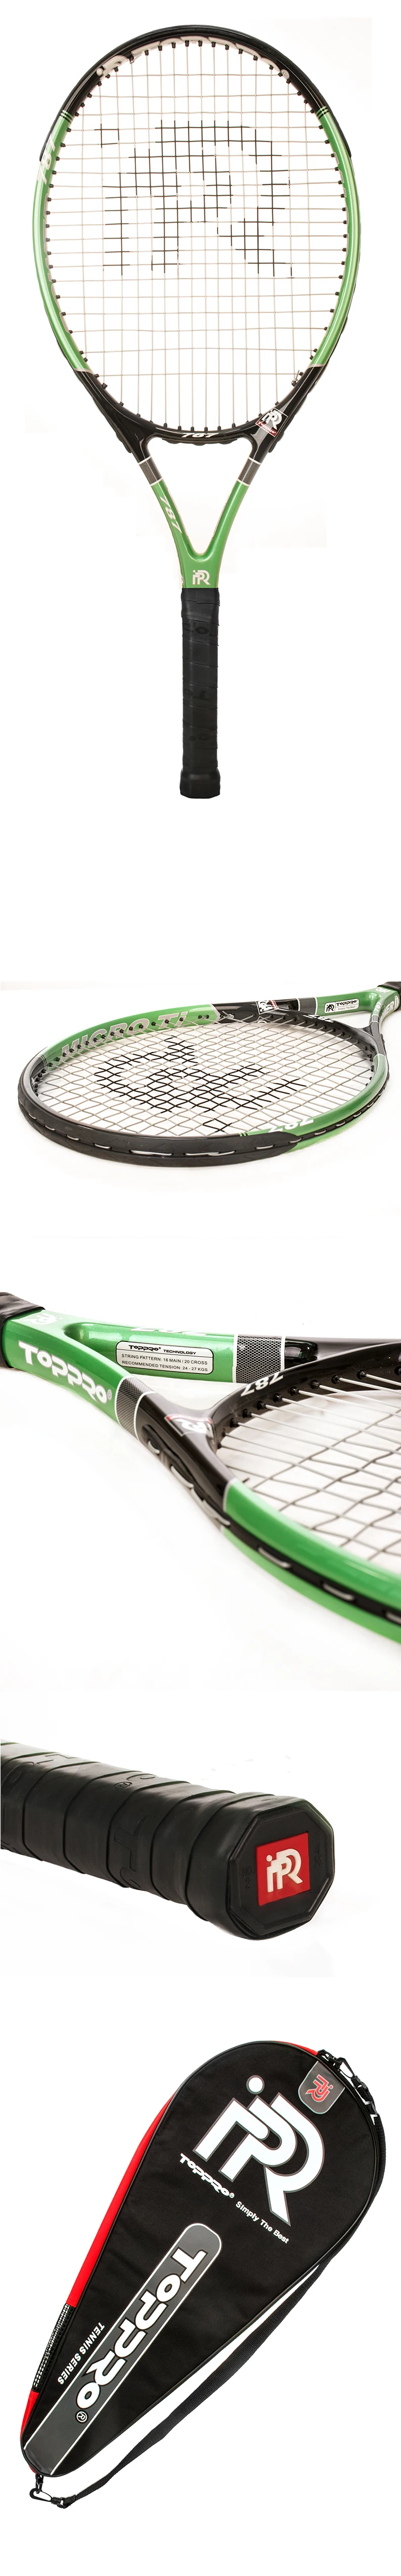 Теннисные ракетки de Алюминий углерода большой головой Tenis Raquete Профессиональная теннисная ракетка оригинальный Raqueta де теннис с строка